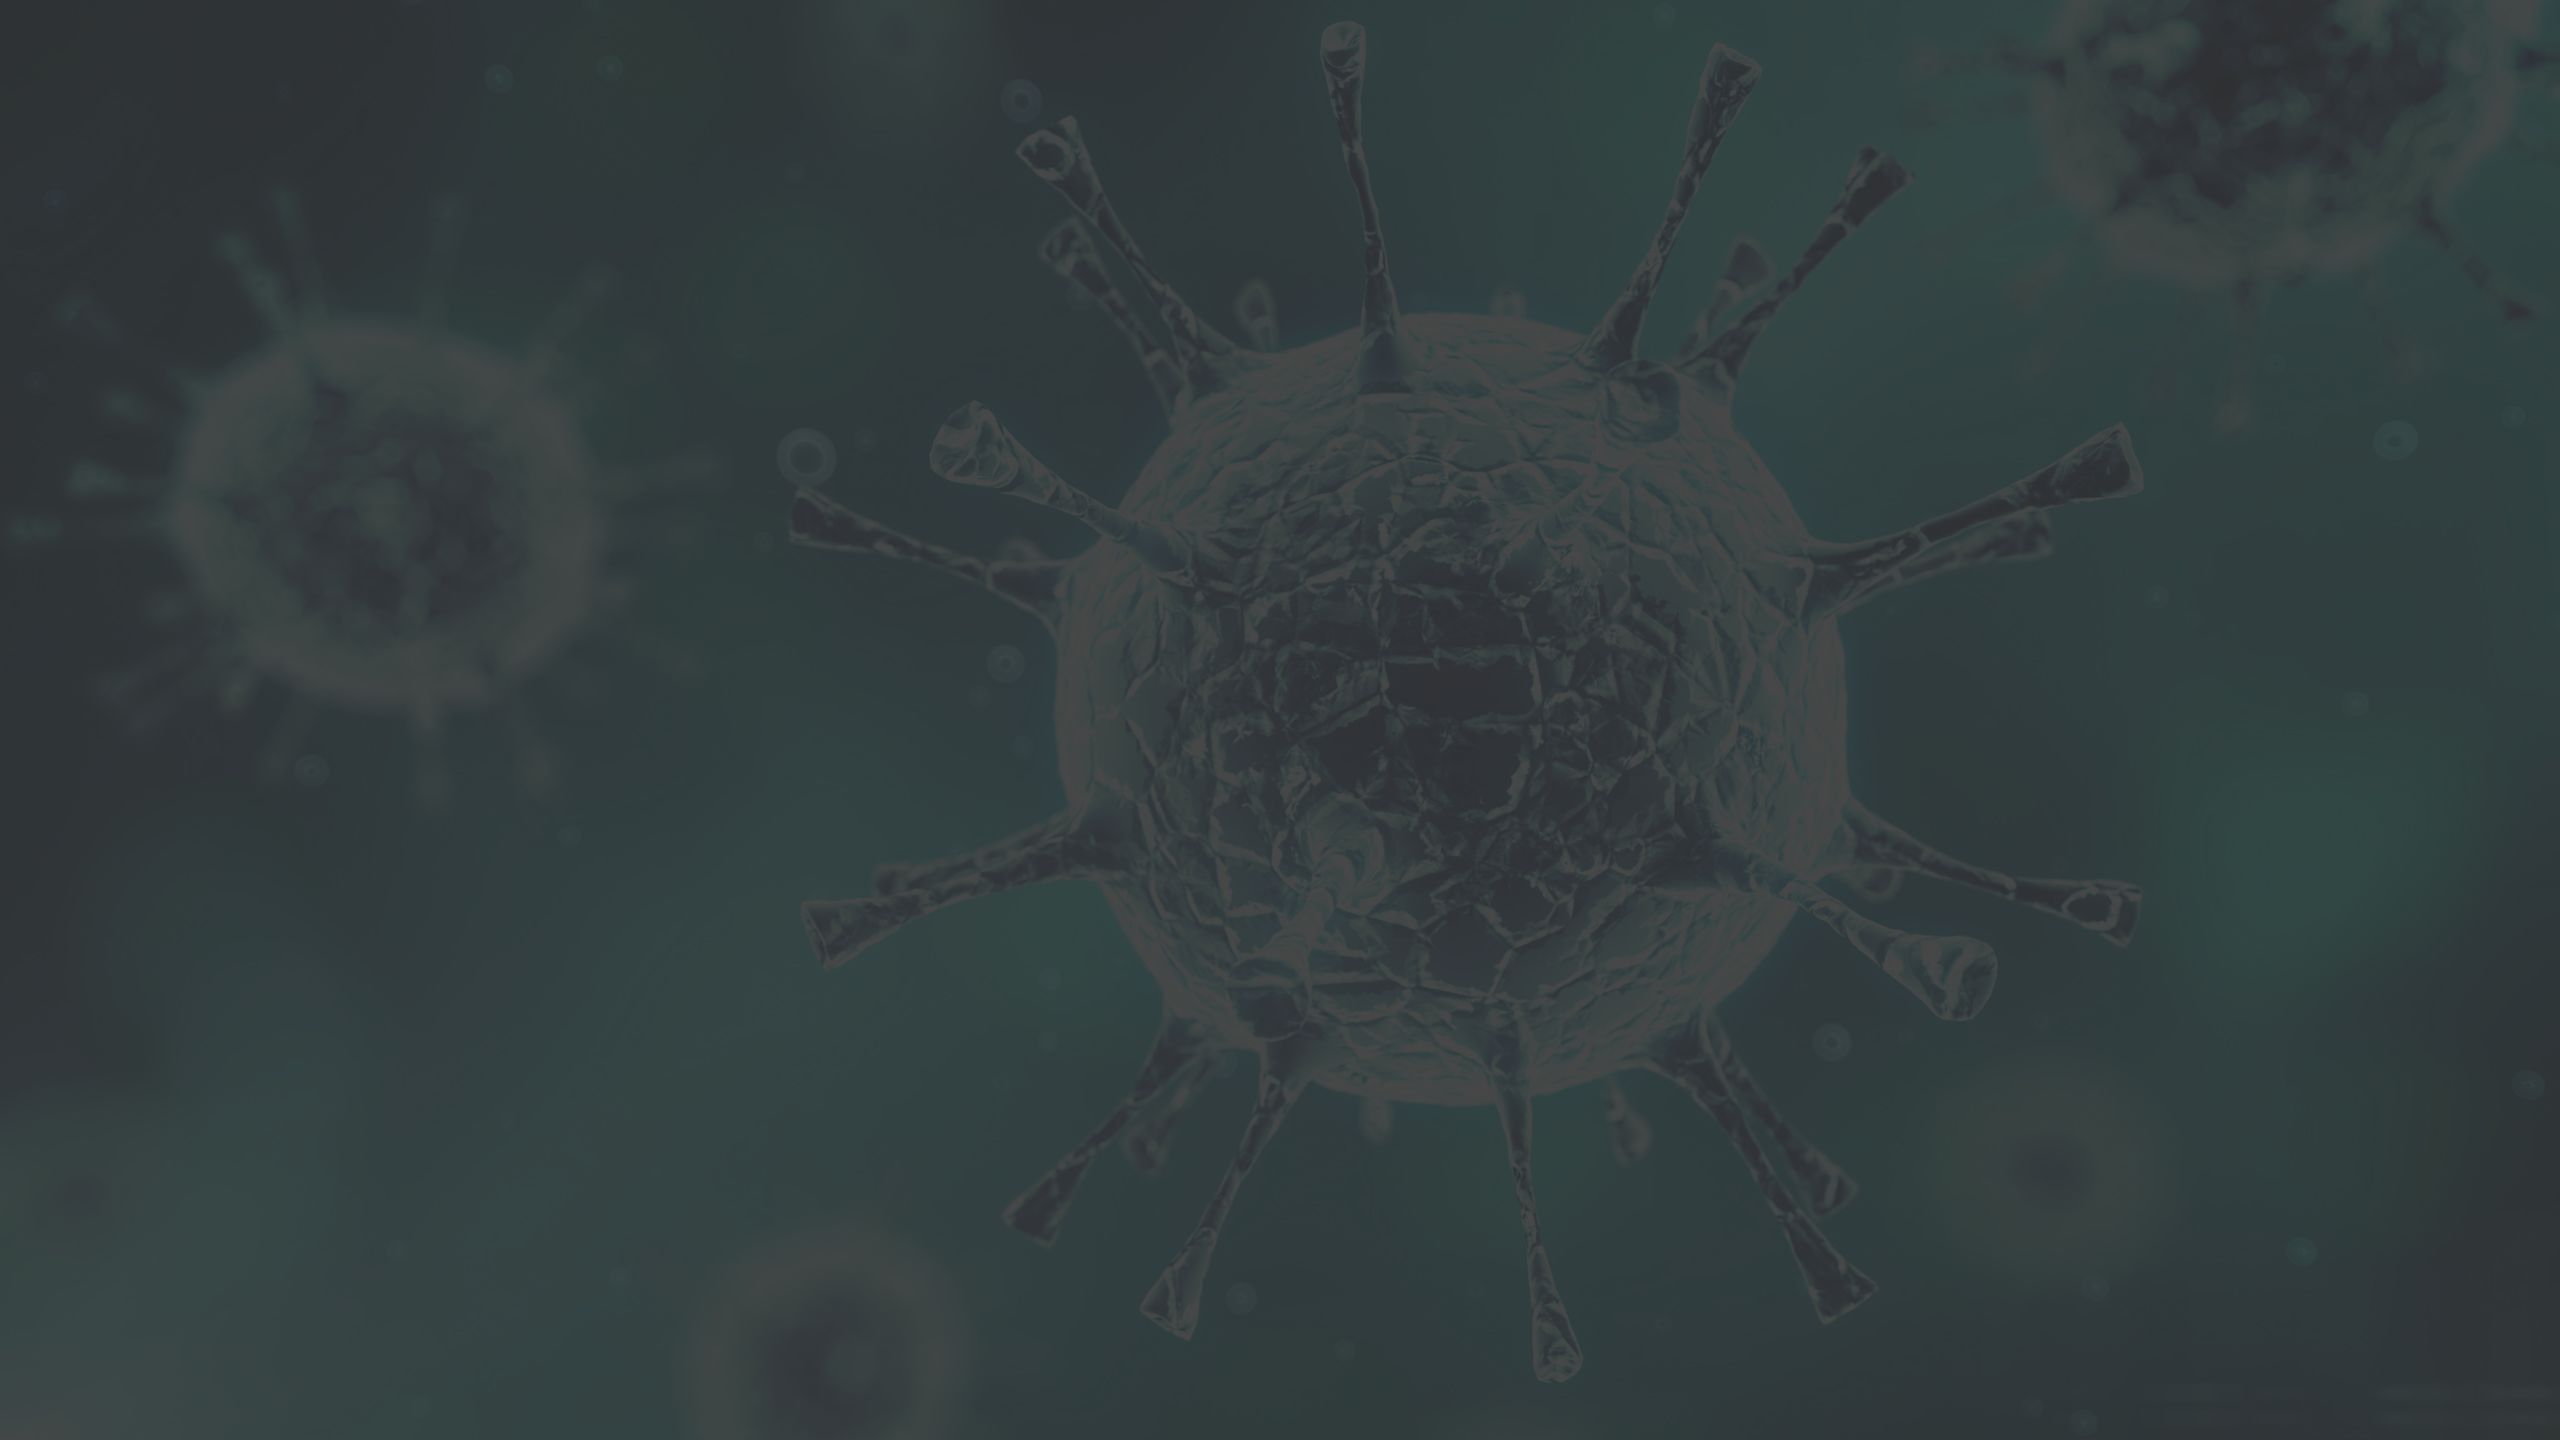 virus, microscopic view of virus, bacteria